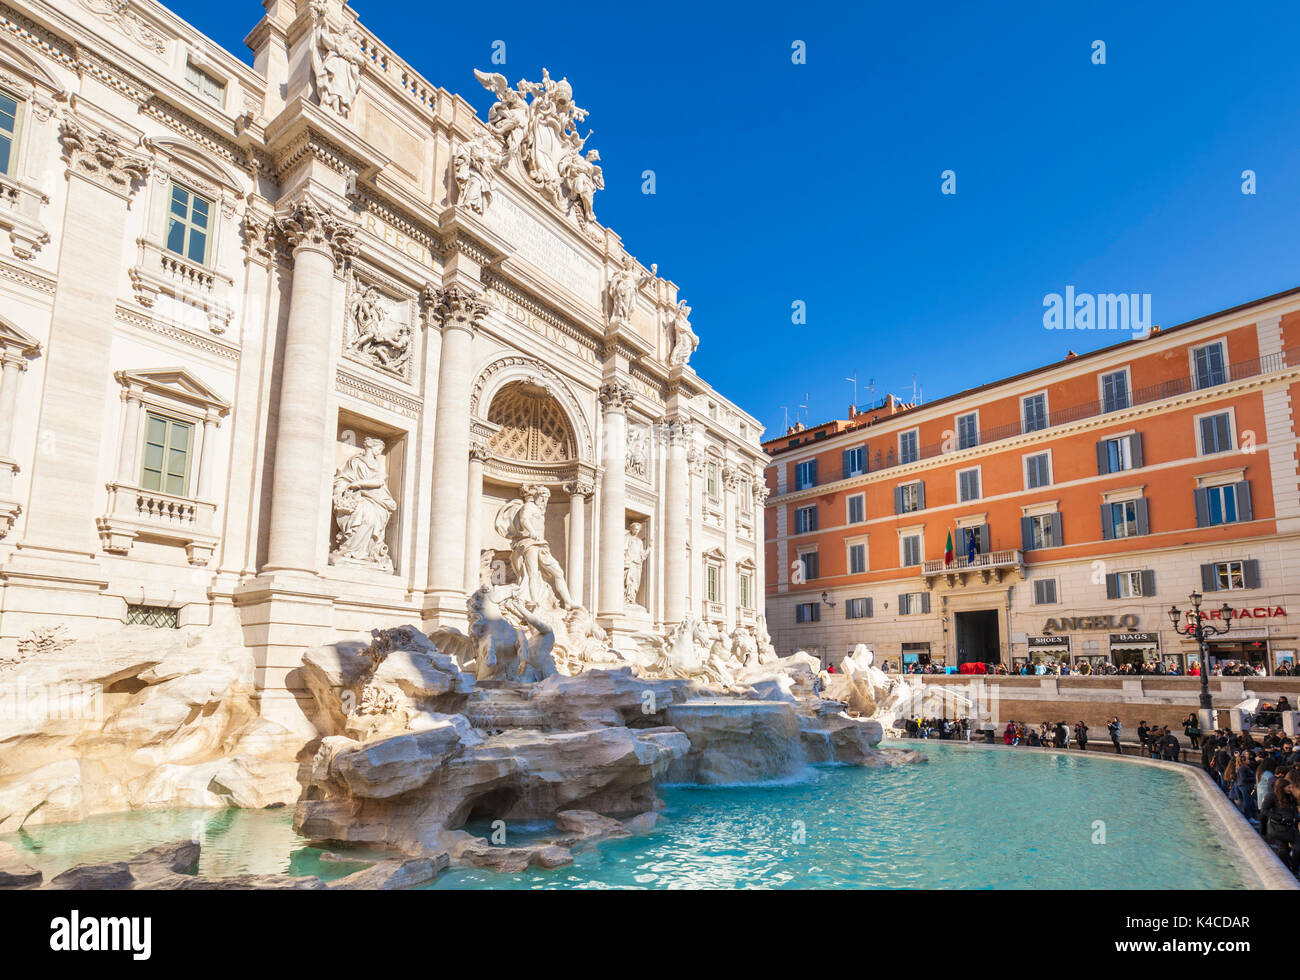 ROME ITALIE Rome Italie nouveau nettoyage de la fontaine de Trevi soutenu par le Palazzo Poli Italie Lazio Rome de jour eu Europe Banque D'Images